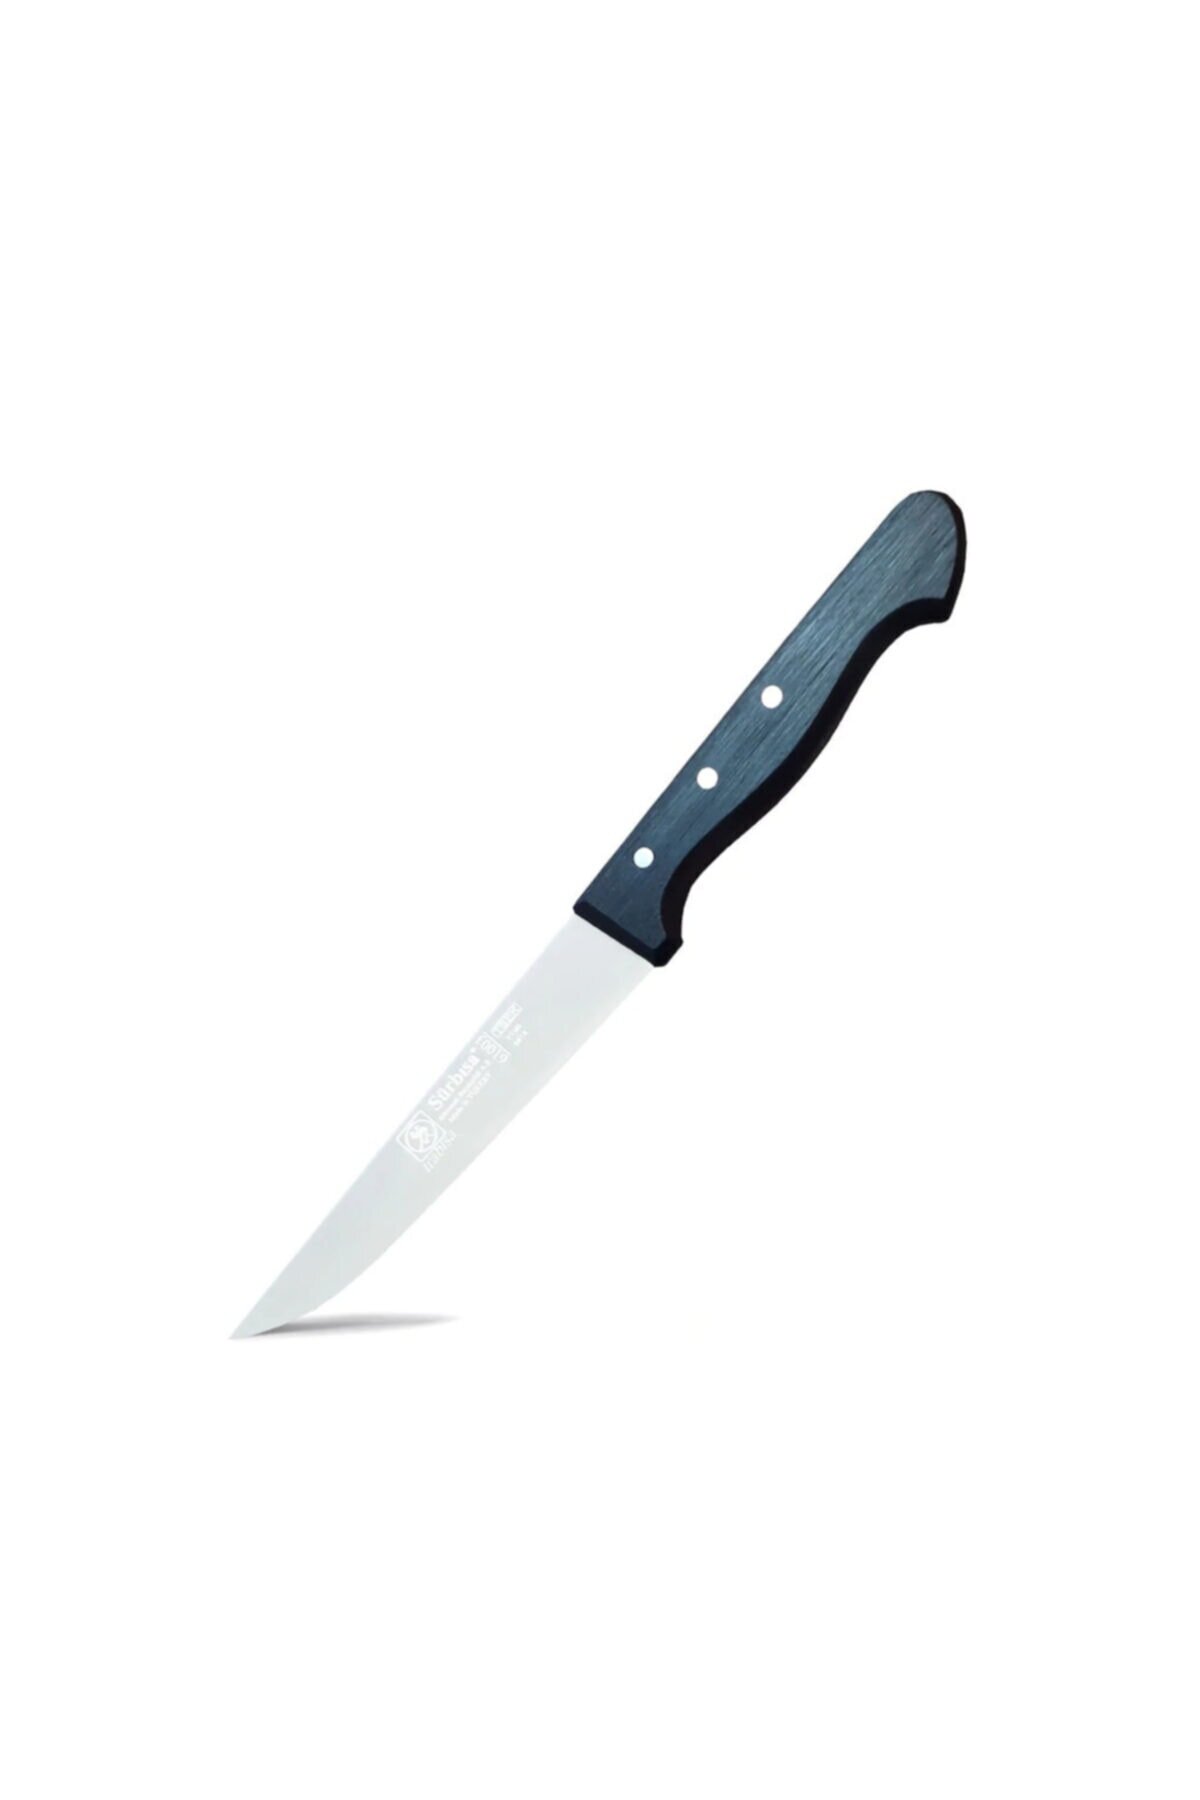 Sürmene Sürbısa 61003 Sebze Salata Bıçağı